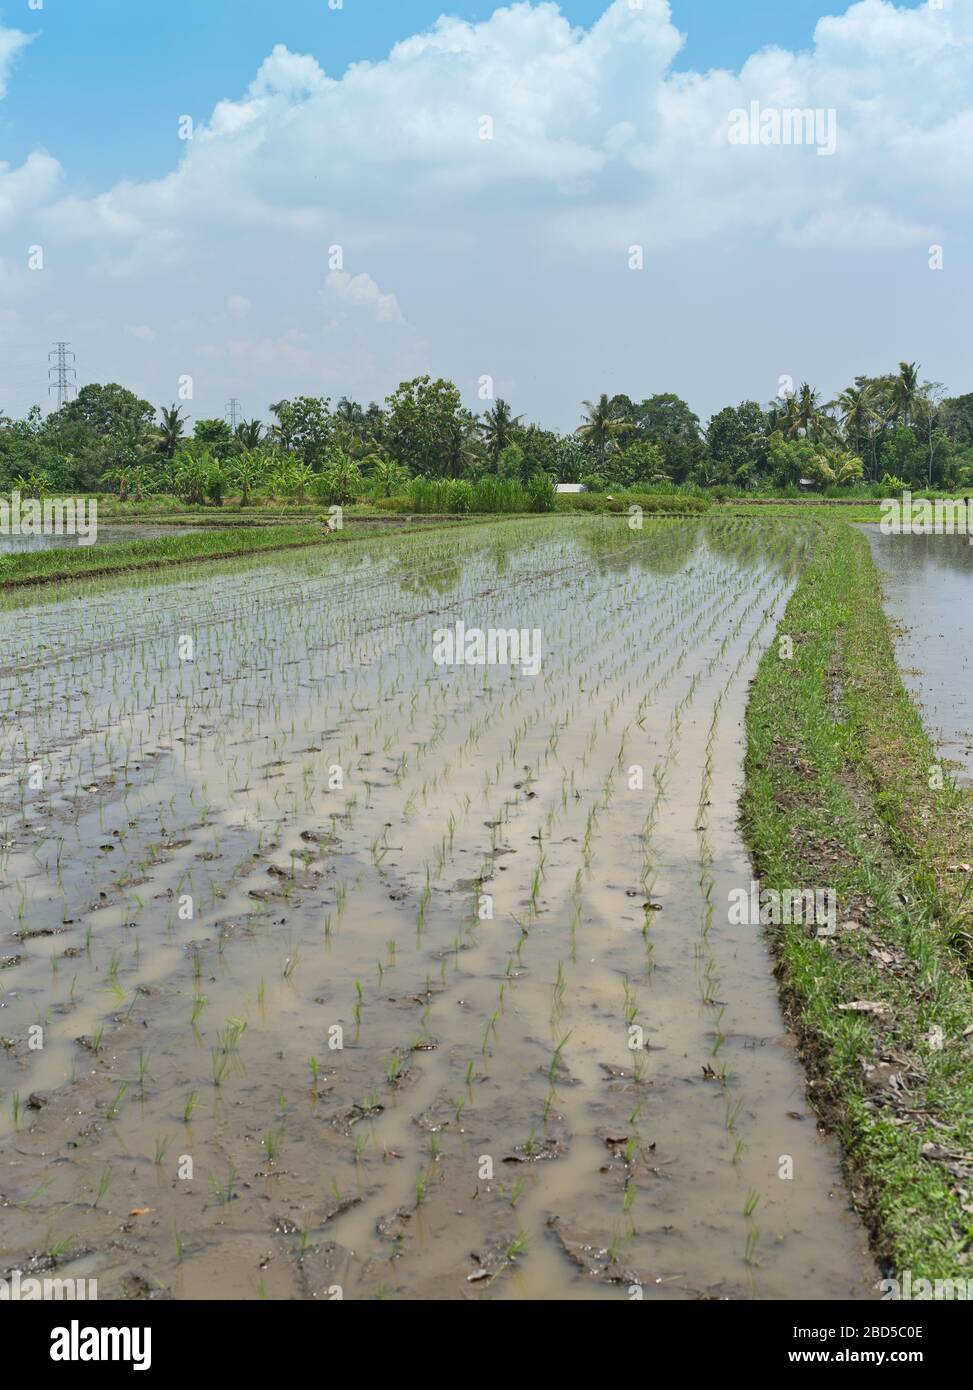 dh Balinesischen Felder gepflanzt Reis BALI INDONESIEN in nassen Paddy Feld Landwirtschaft Ernte Paddies asien indonesischen Kulturen Stockfoto